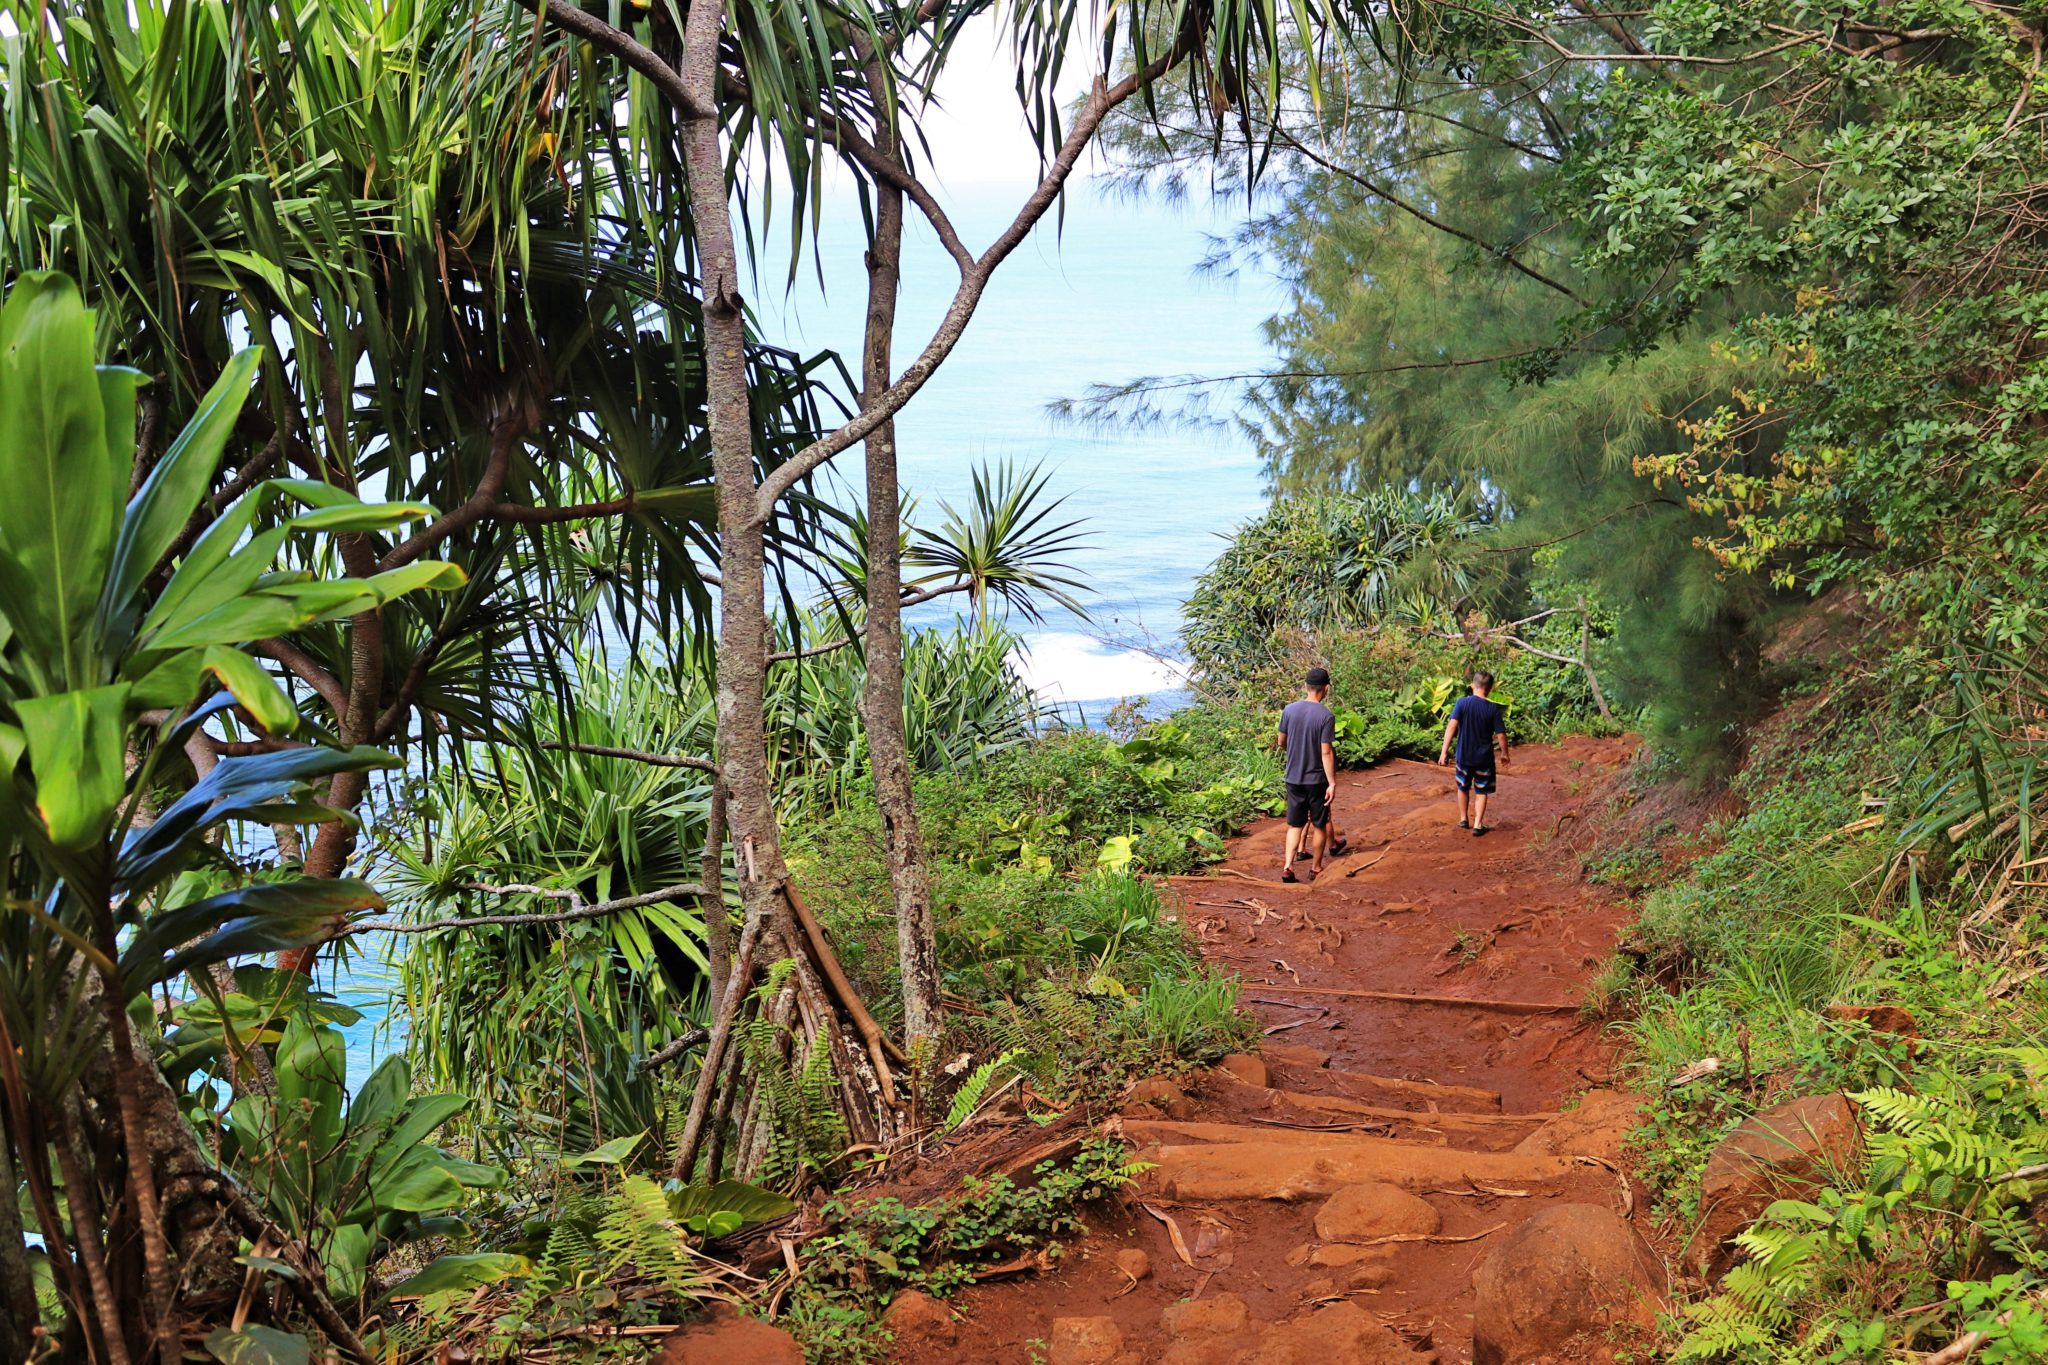 Best hikes in Kauai | Top things to do in Kauai #kauai #hawaii #simplywander #kalalautrail